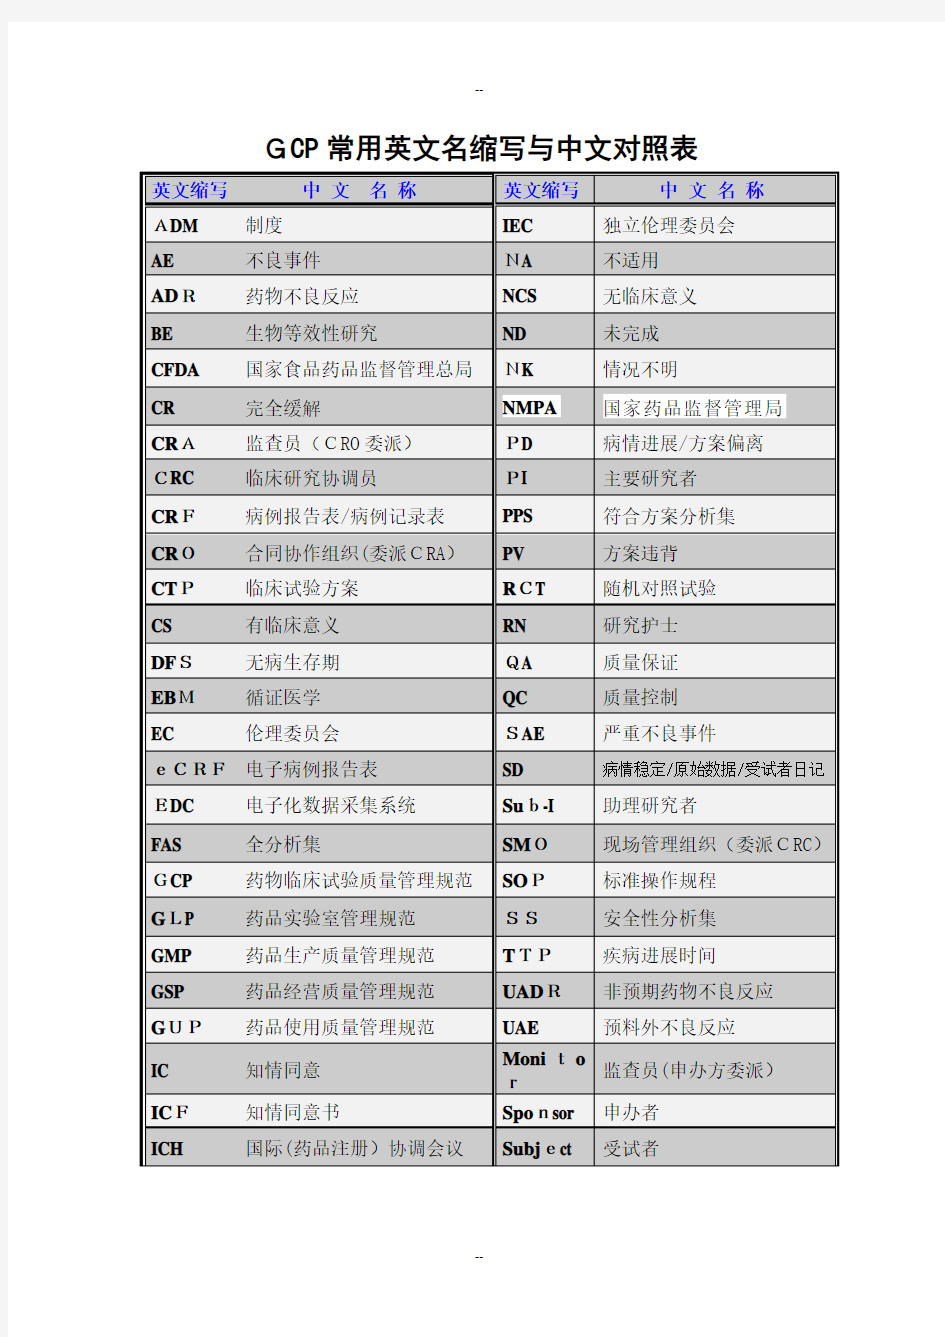 GCP常用英文名缩写与中文对照表